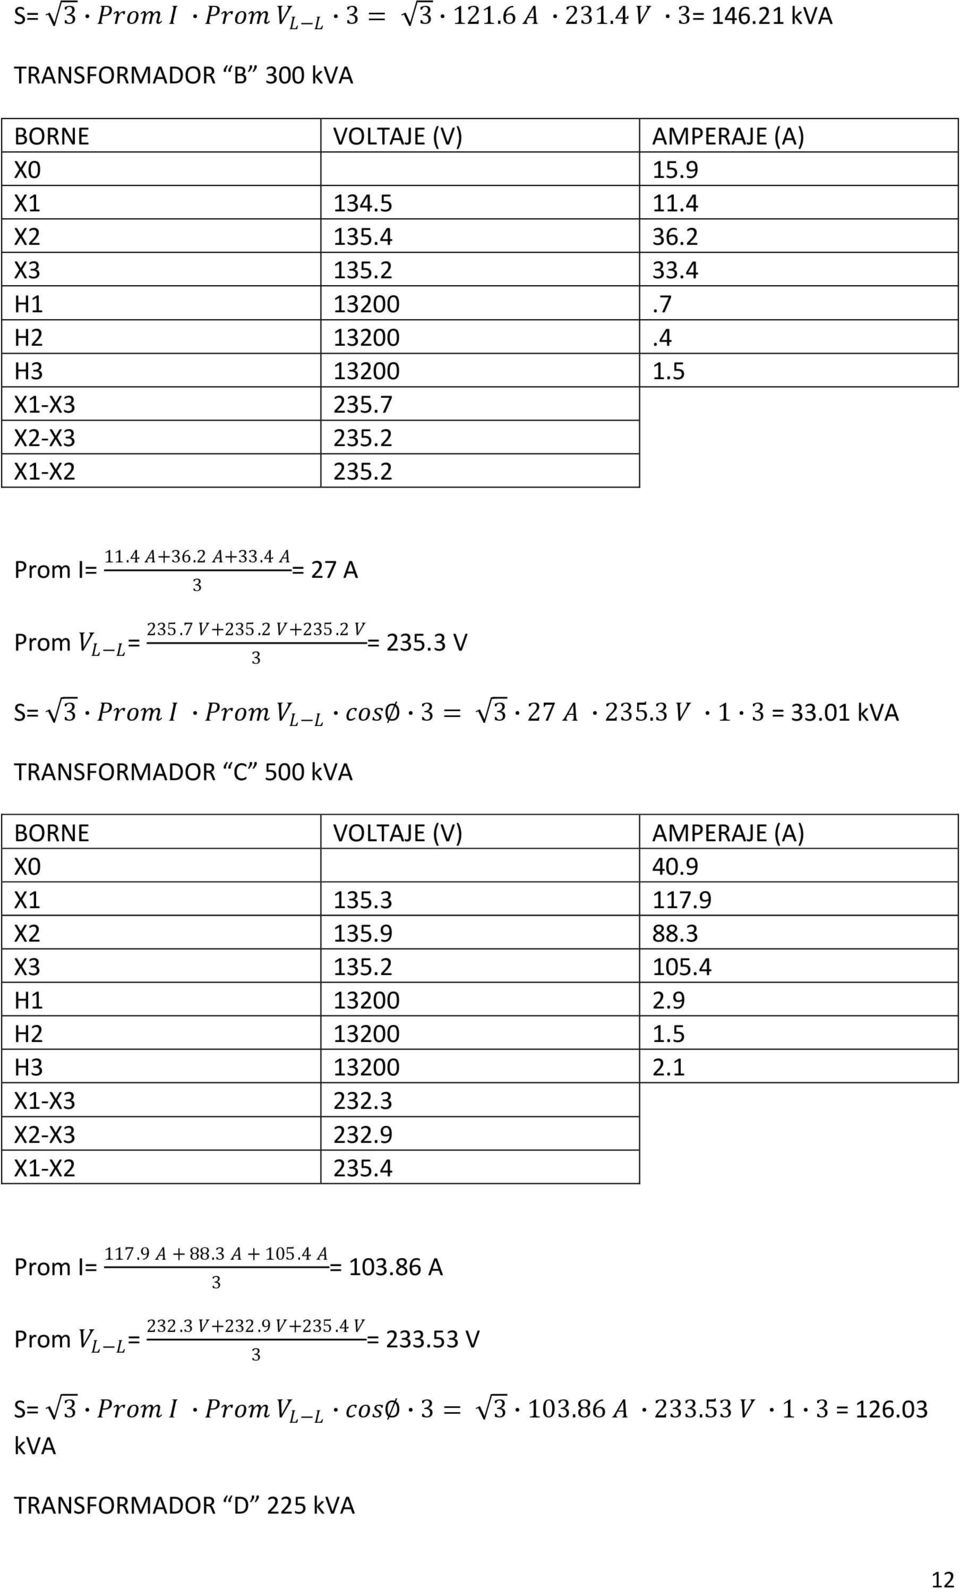 01 kva TRANSFORMADOR C 500 kva X0 40.9 X1 15. 117.9 X2 15.9 88. X 15.2 105.4 H1 1200 2.9 H2 1200 1.5 H 1200 2.1 X1-X 22. X2-X 22.9 X1-X2 25.